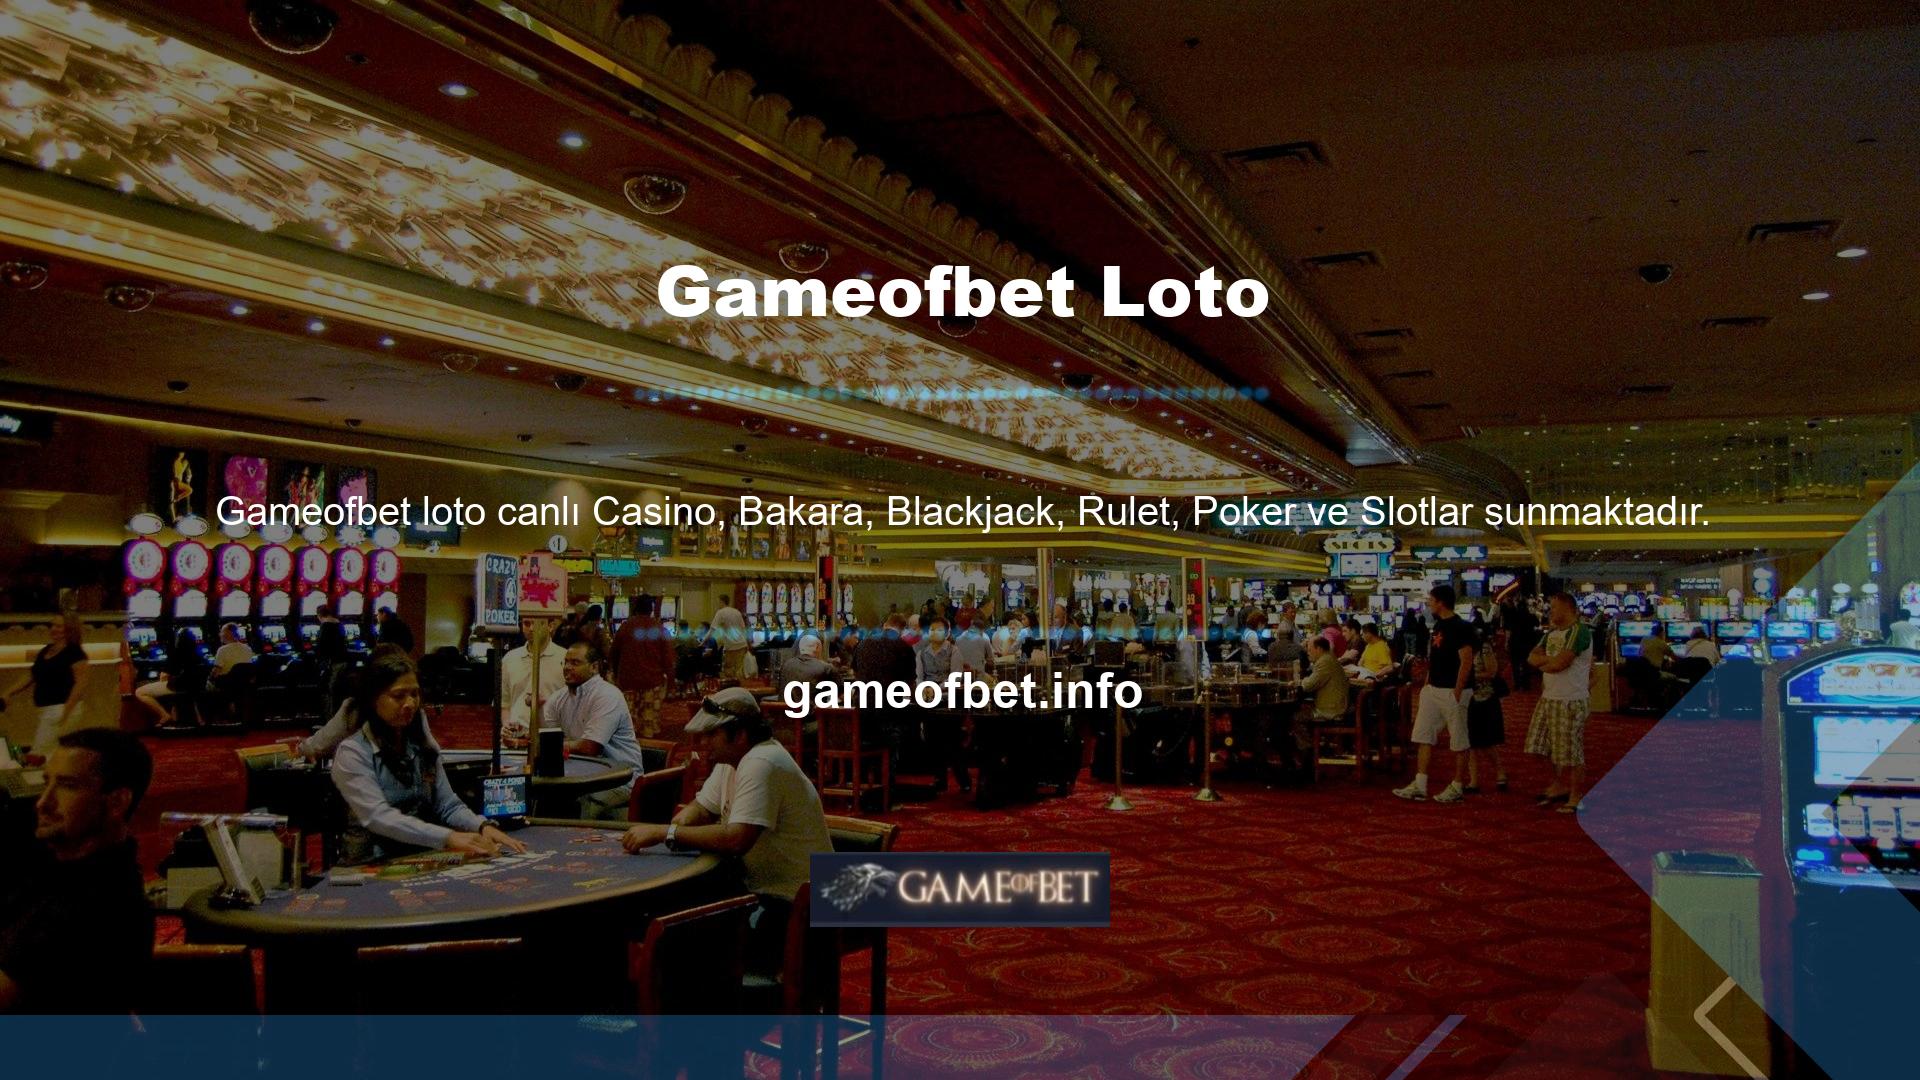 Ayrıca Gameofbet canlı poker seçeneği de bulunmaktadır